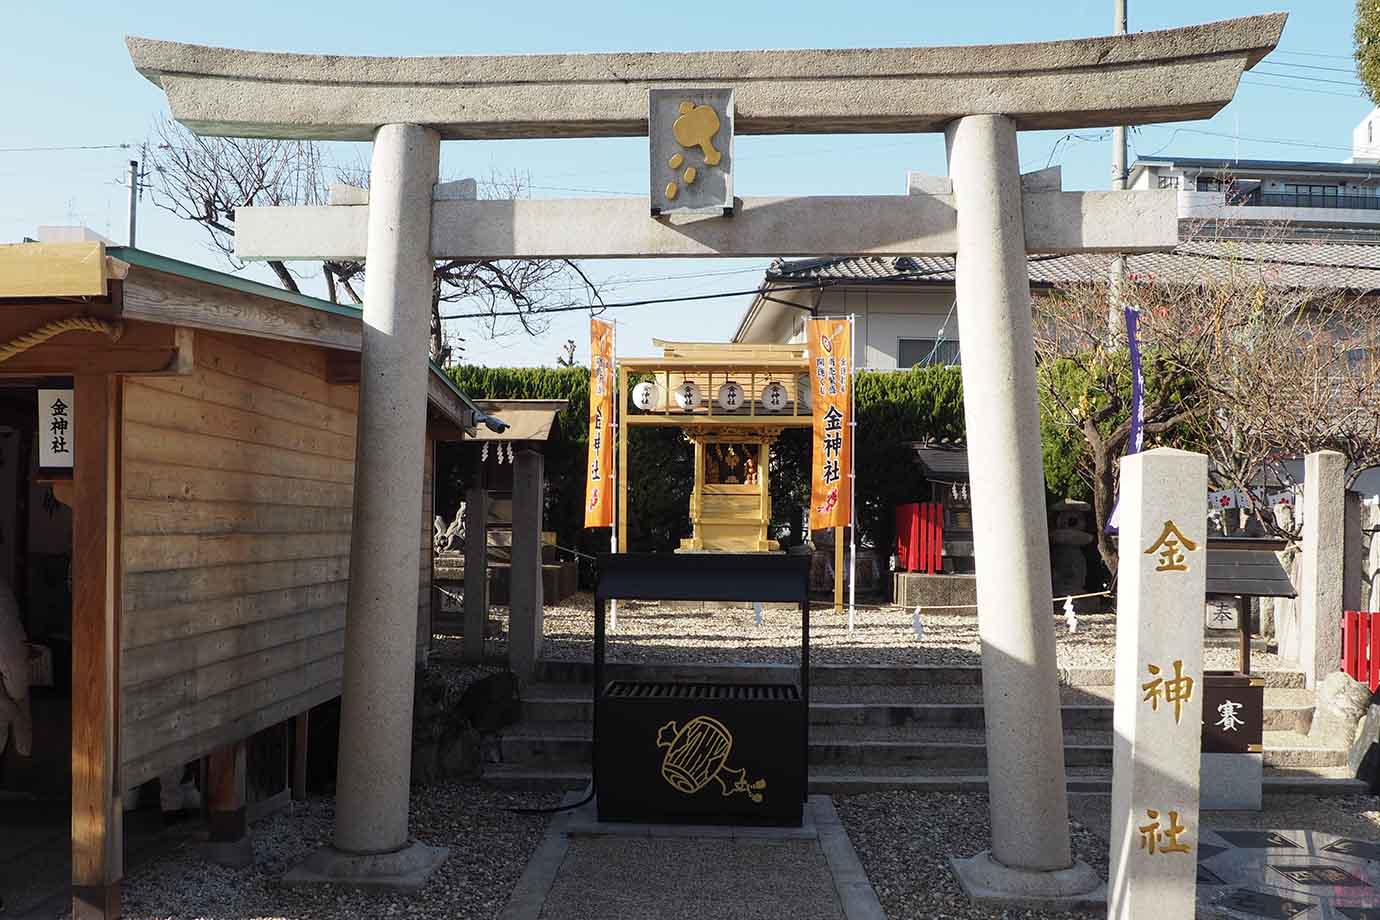 名古屋市北区にある金神社は、学問の神様、菅原道真をまつる山田天満宮の境内にある神社。